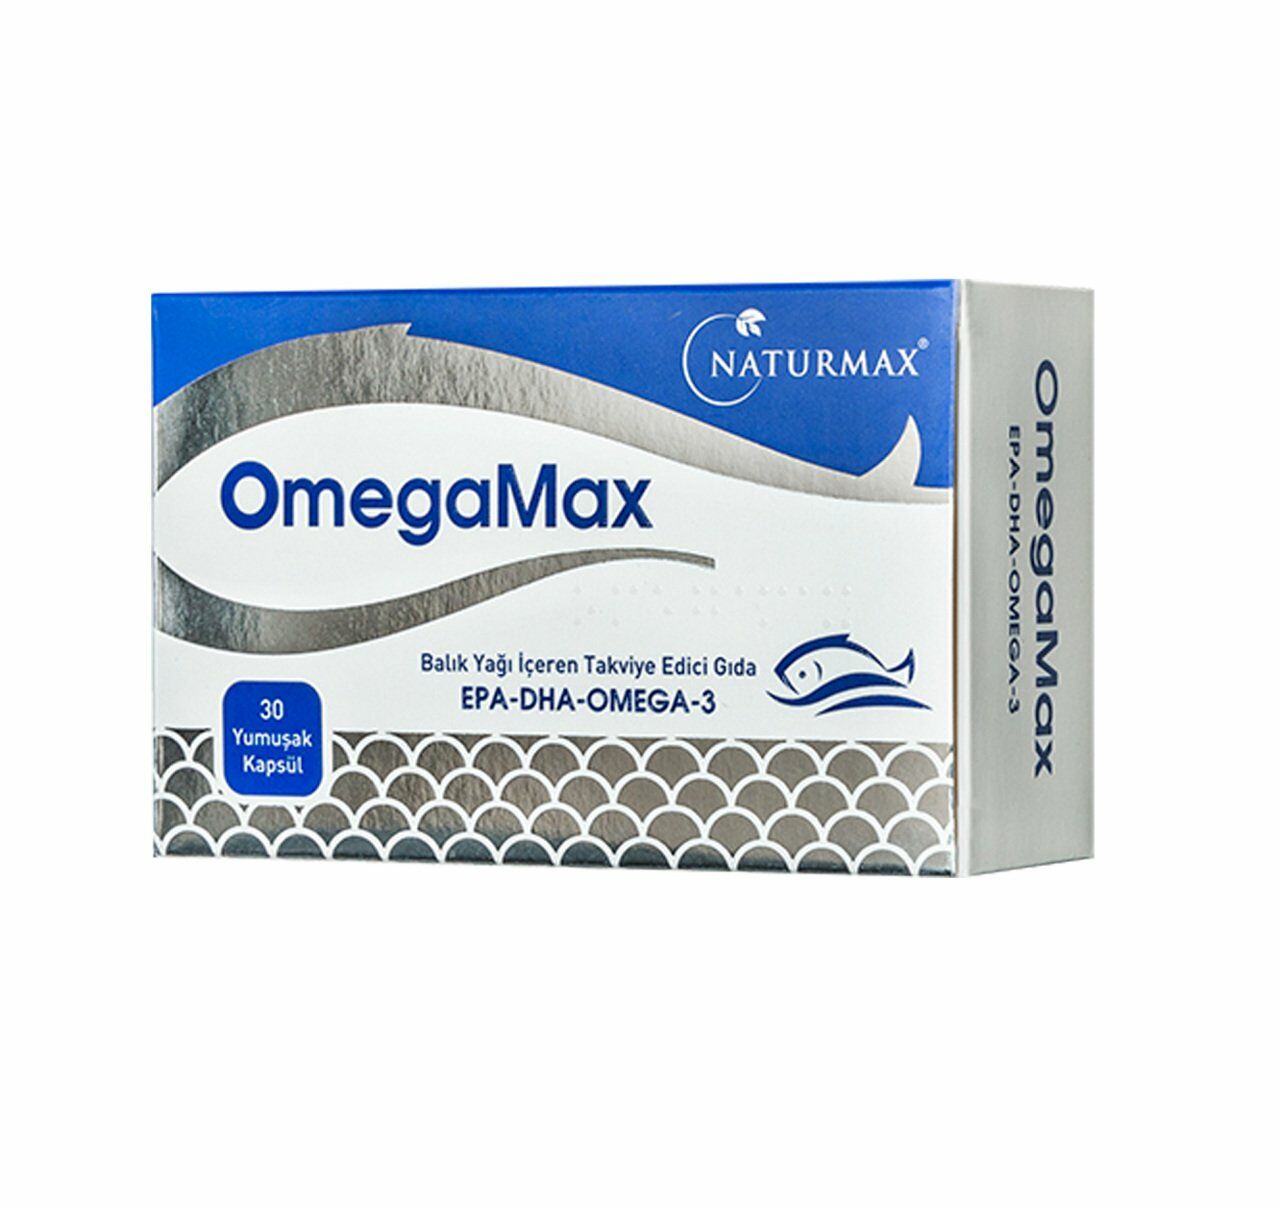 Naturmax Omegamax Balık Yağı Kapsülü 30 lu